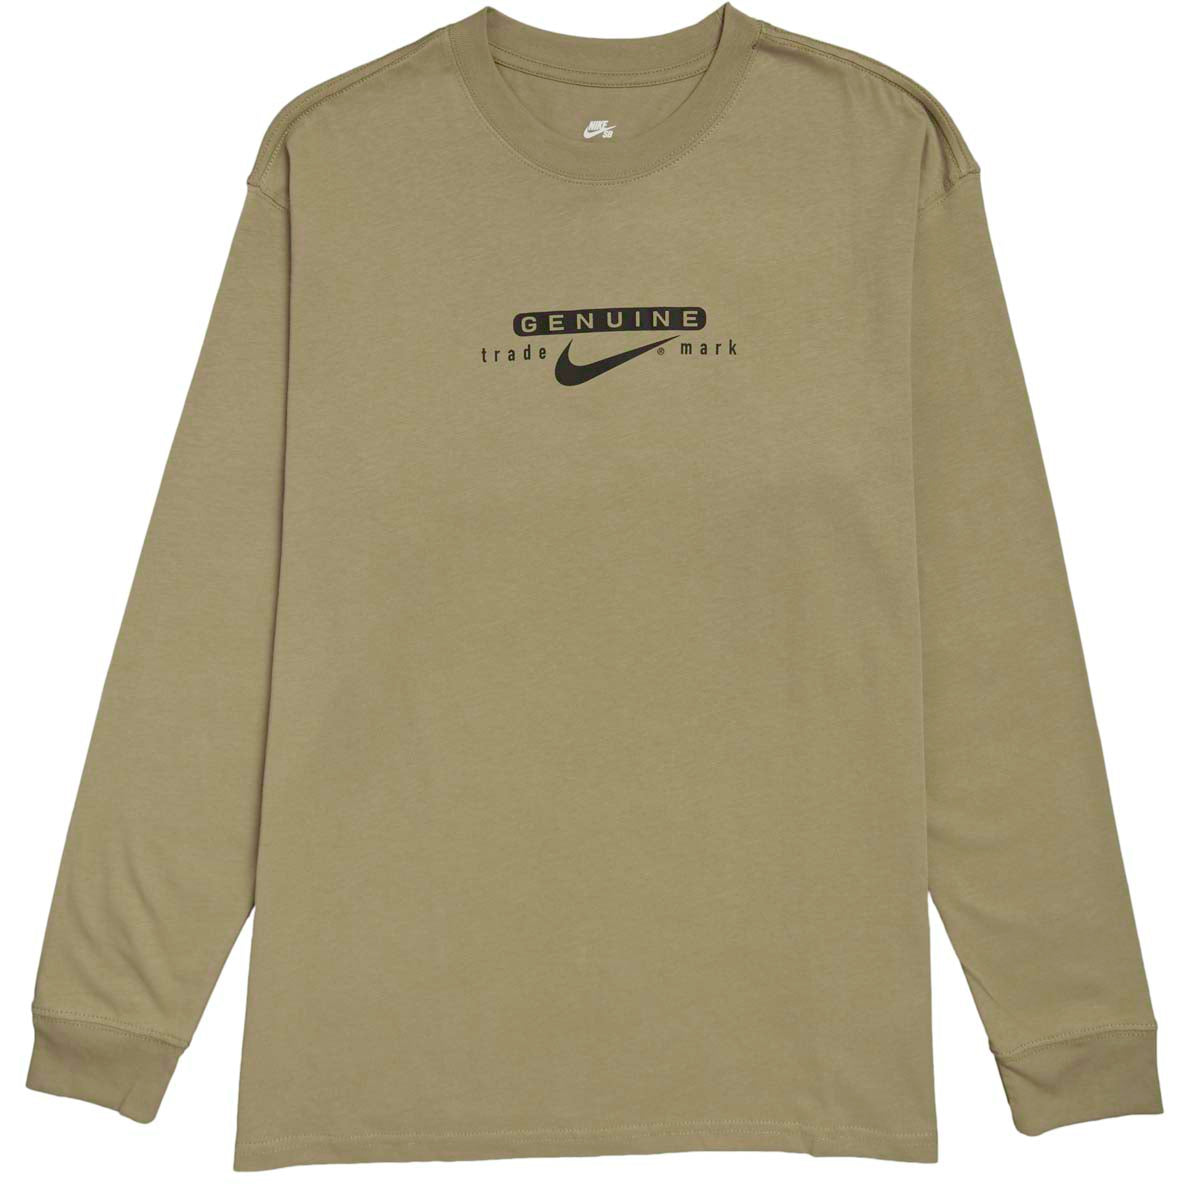 Nike SB Genuine Long Sleeve T-Shirt - Neutral Olive image 1